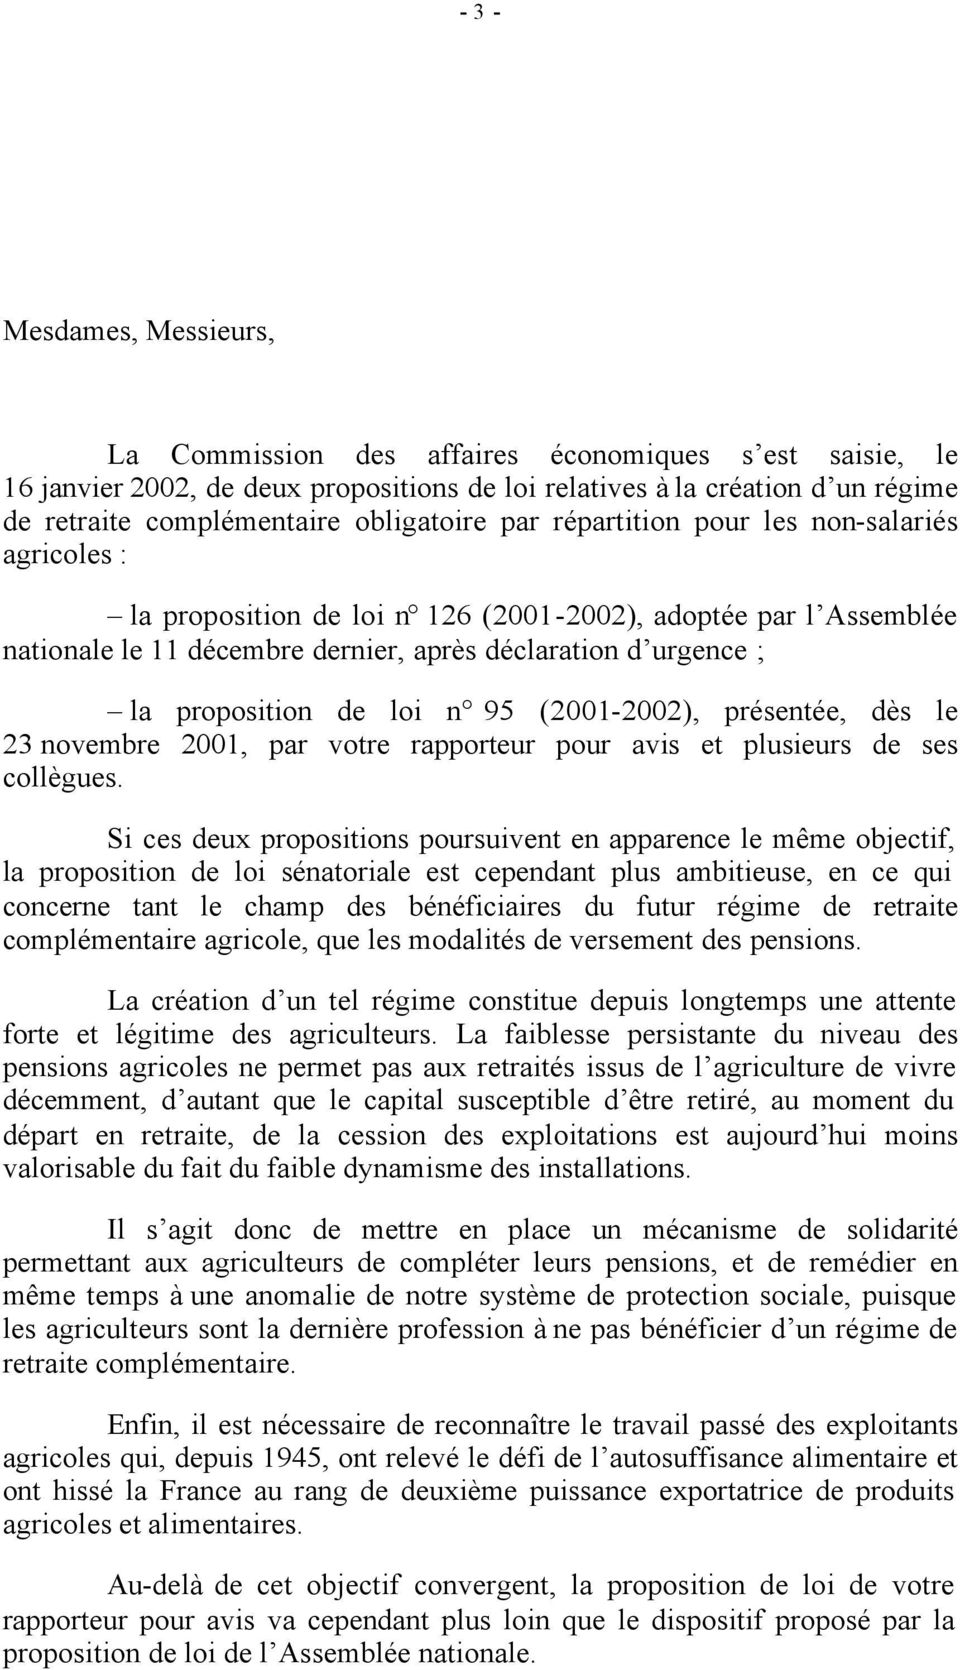 urgence ; la proposition de loi n 95 (2001-2002), présentée, dès le 23 novembre 2001, par votre rapporteur pour avis et plusieurs de ses collègues.